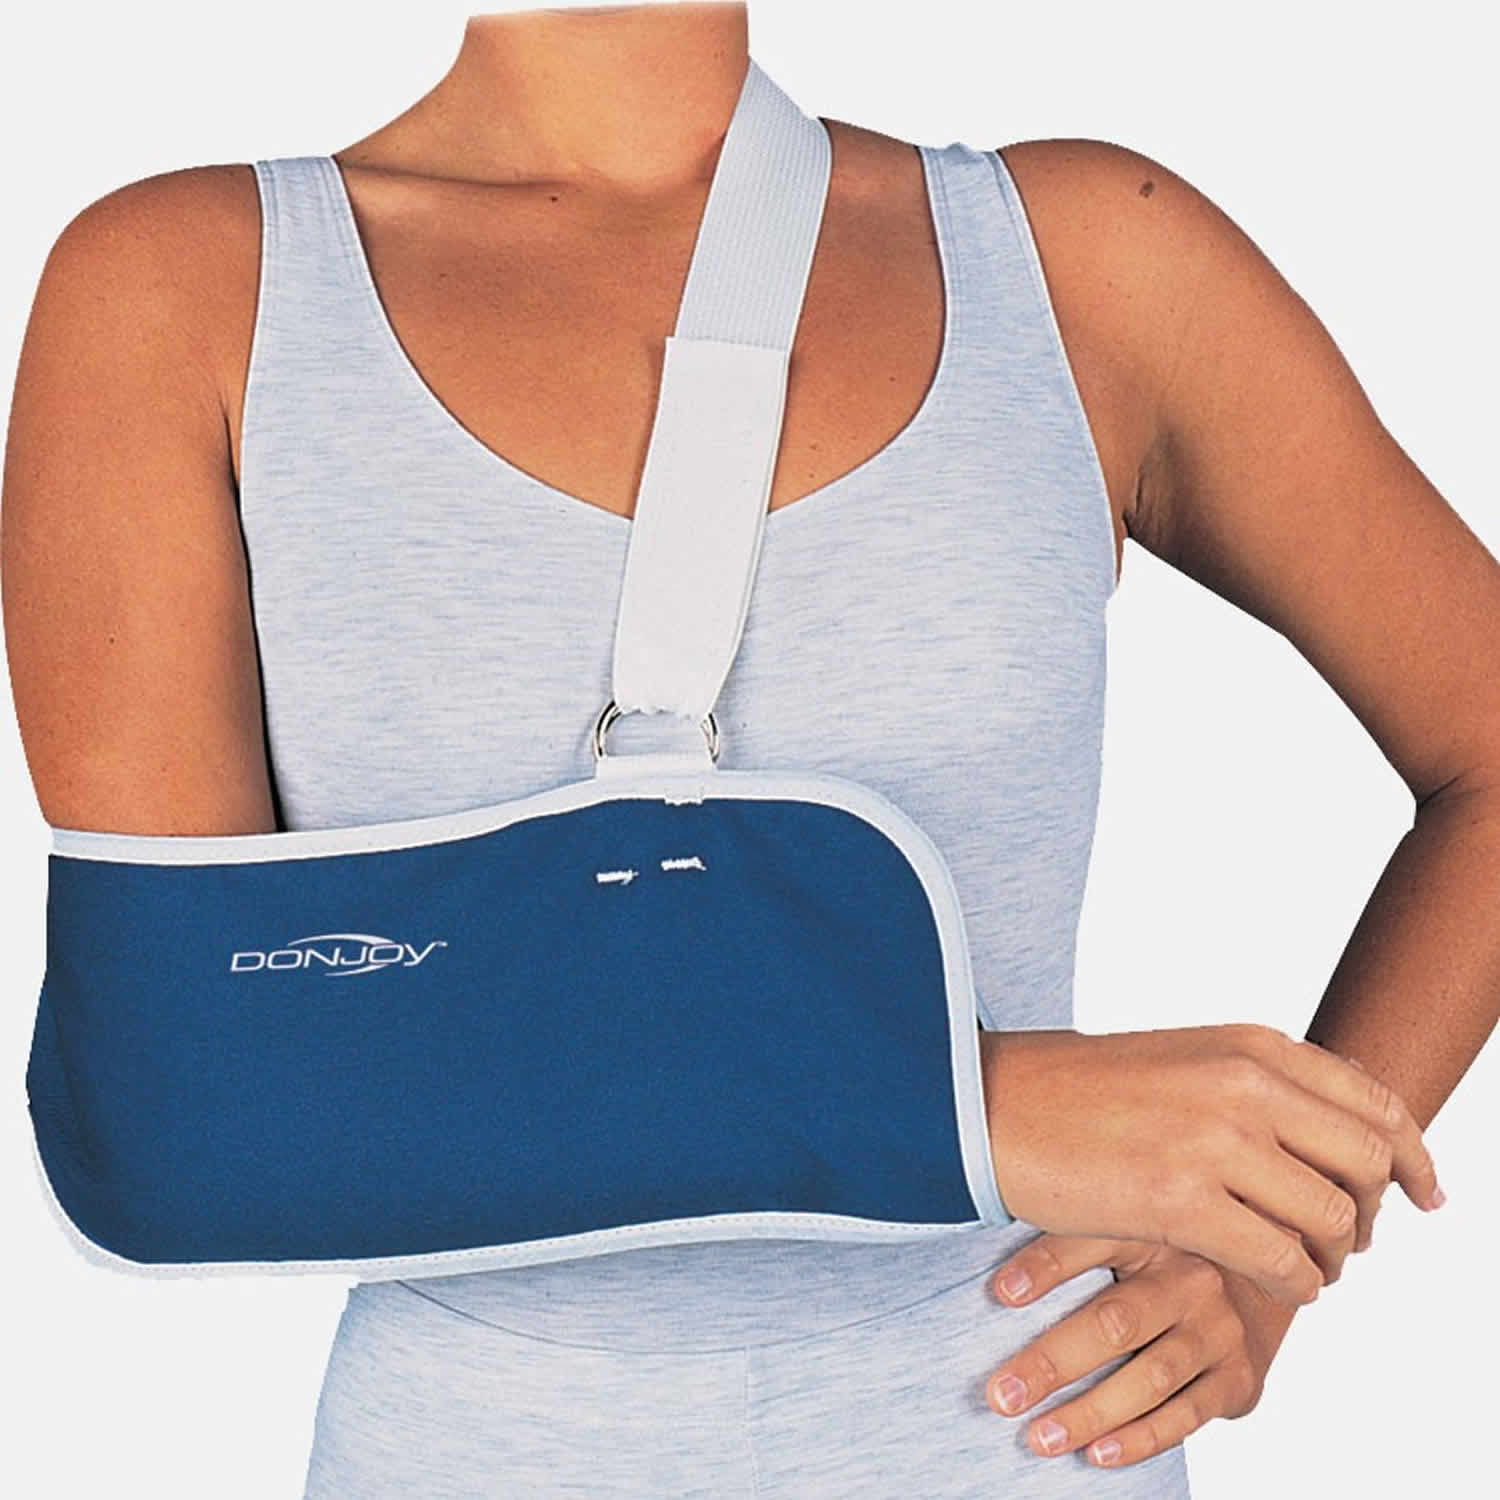 Broken collarbone arm sling